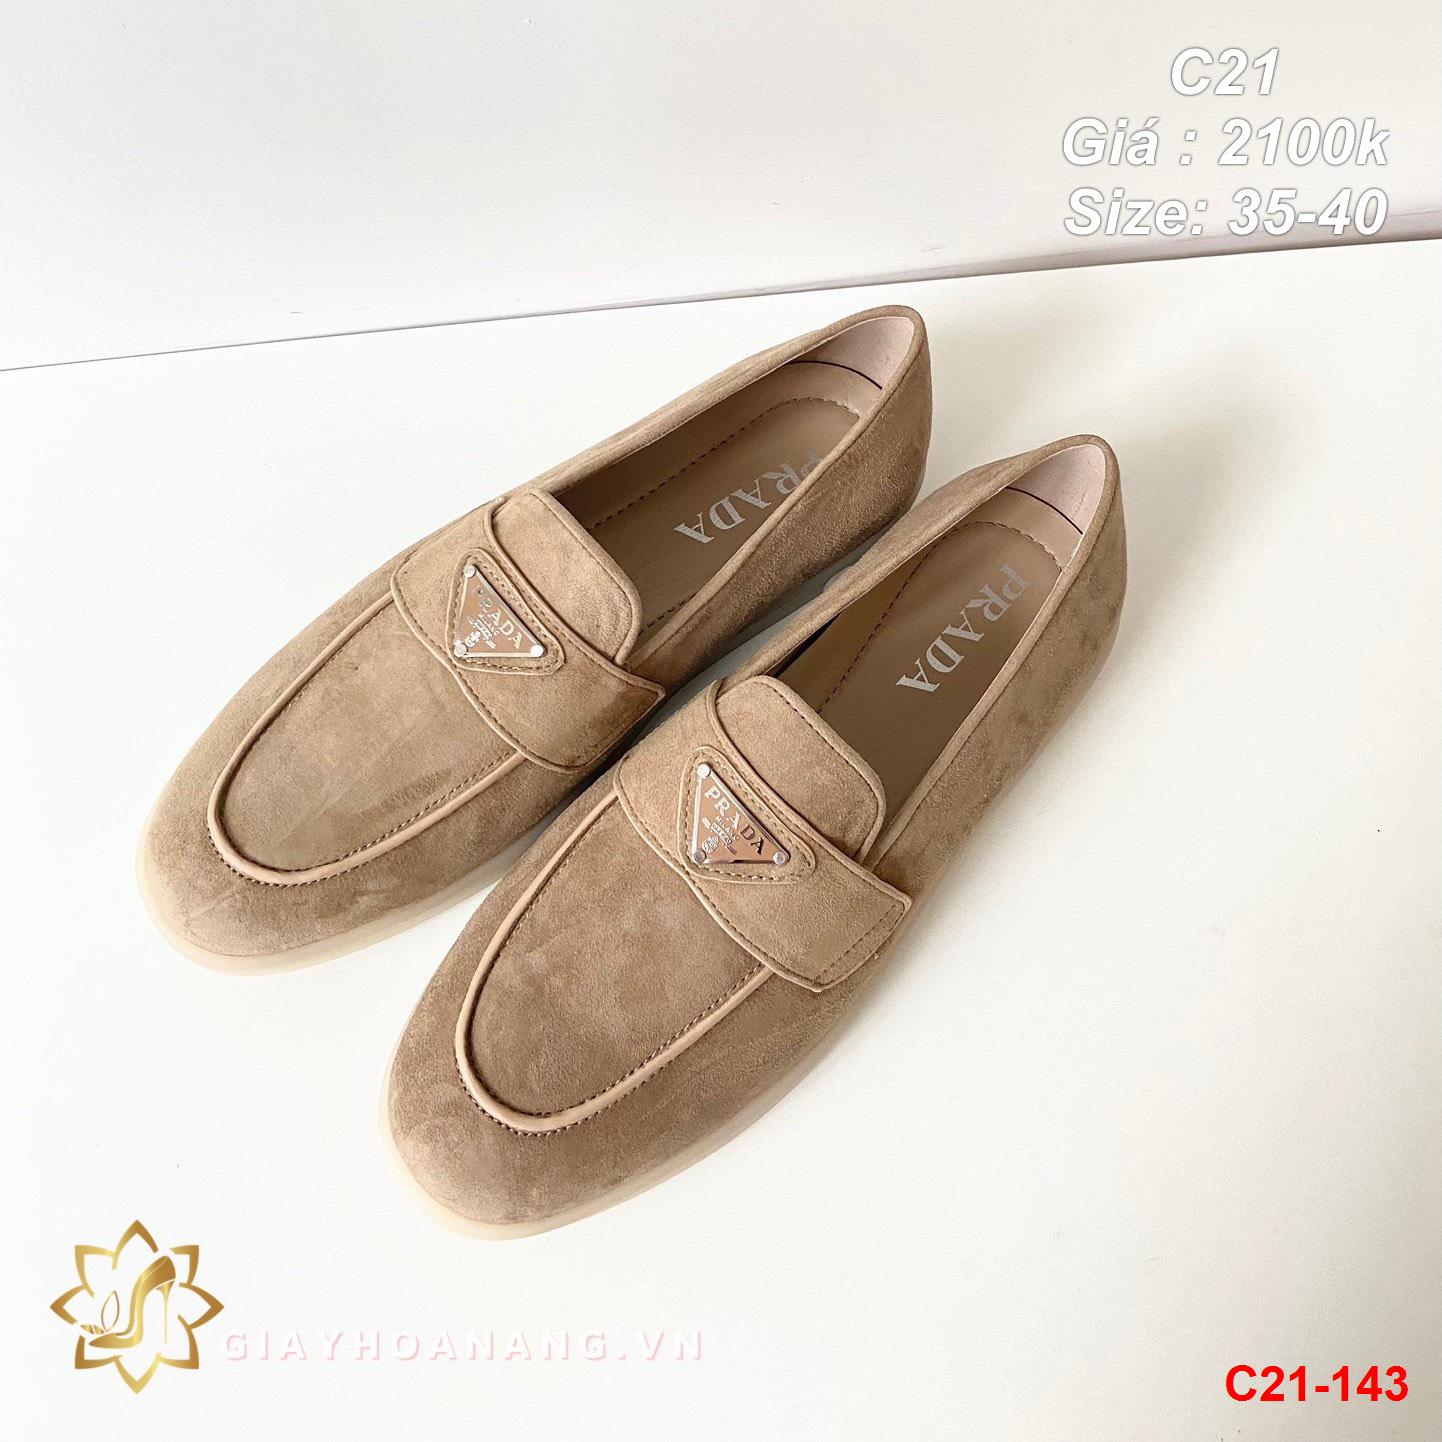 C21-143 Prada giày lười siêu cấp